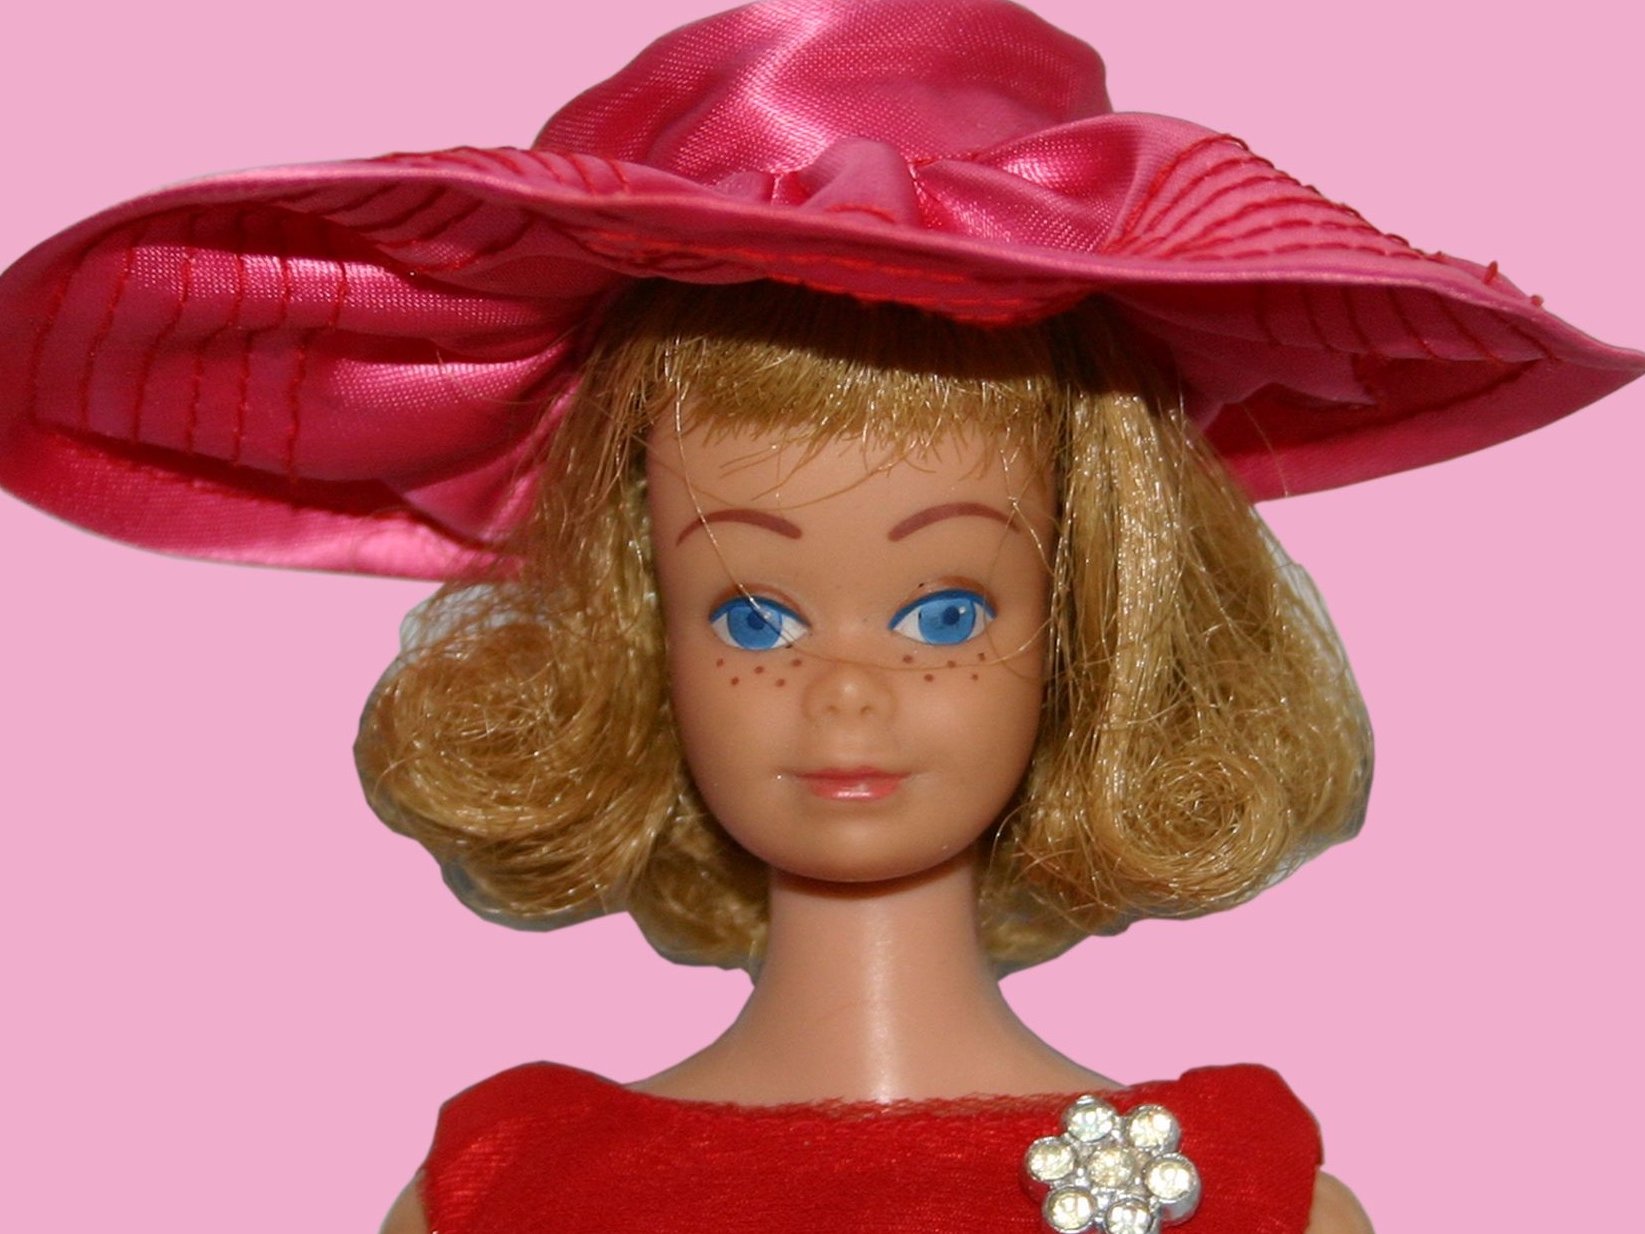 Ontmoedigd zijn rouw Omleiden Cultuurtip: Barbie in het museum | PlusOnline